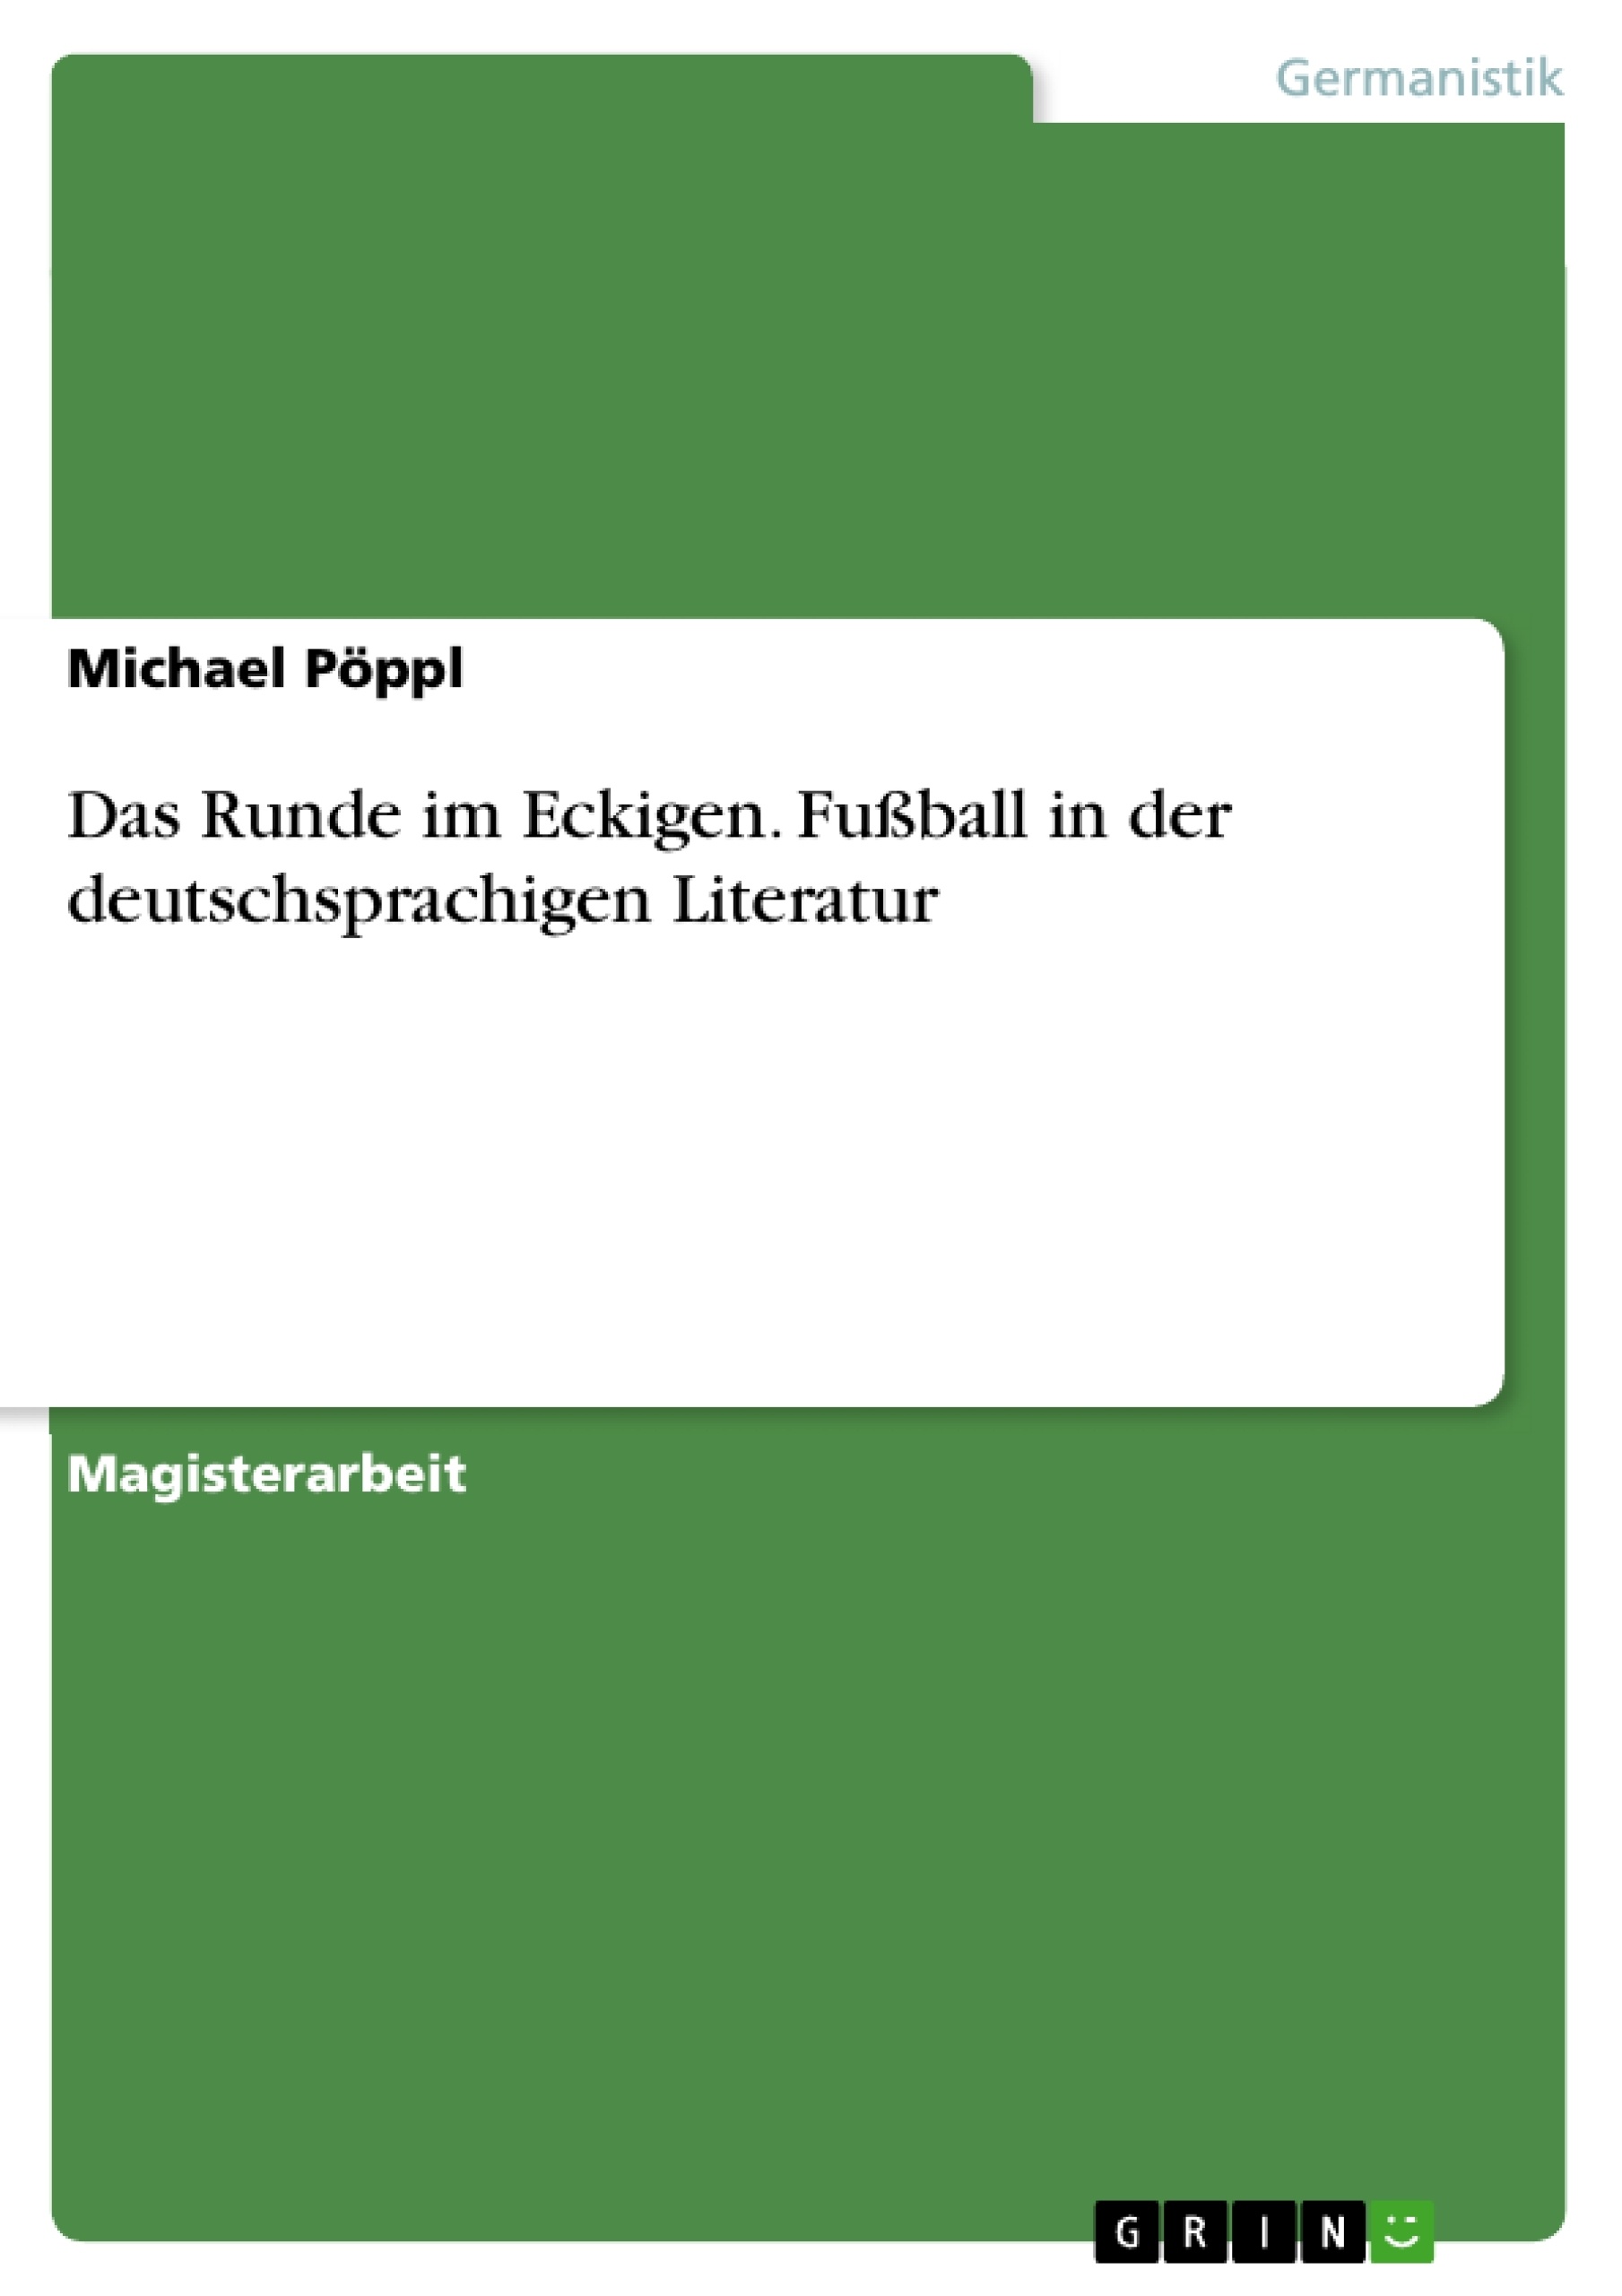 Title: Das Runde im Eckigen. Fußball in der deutschsprachigen Literatur